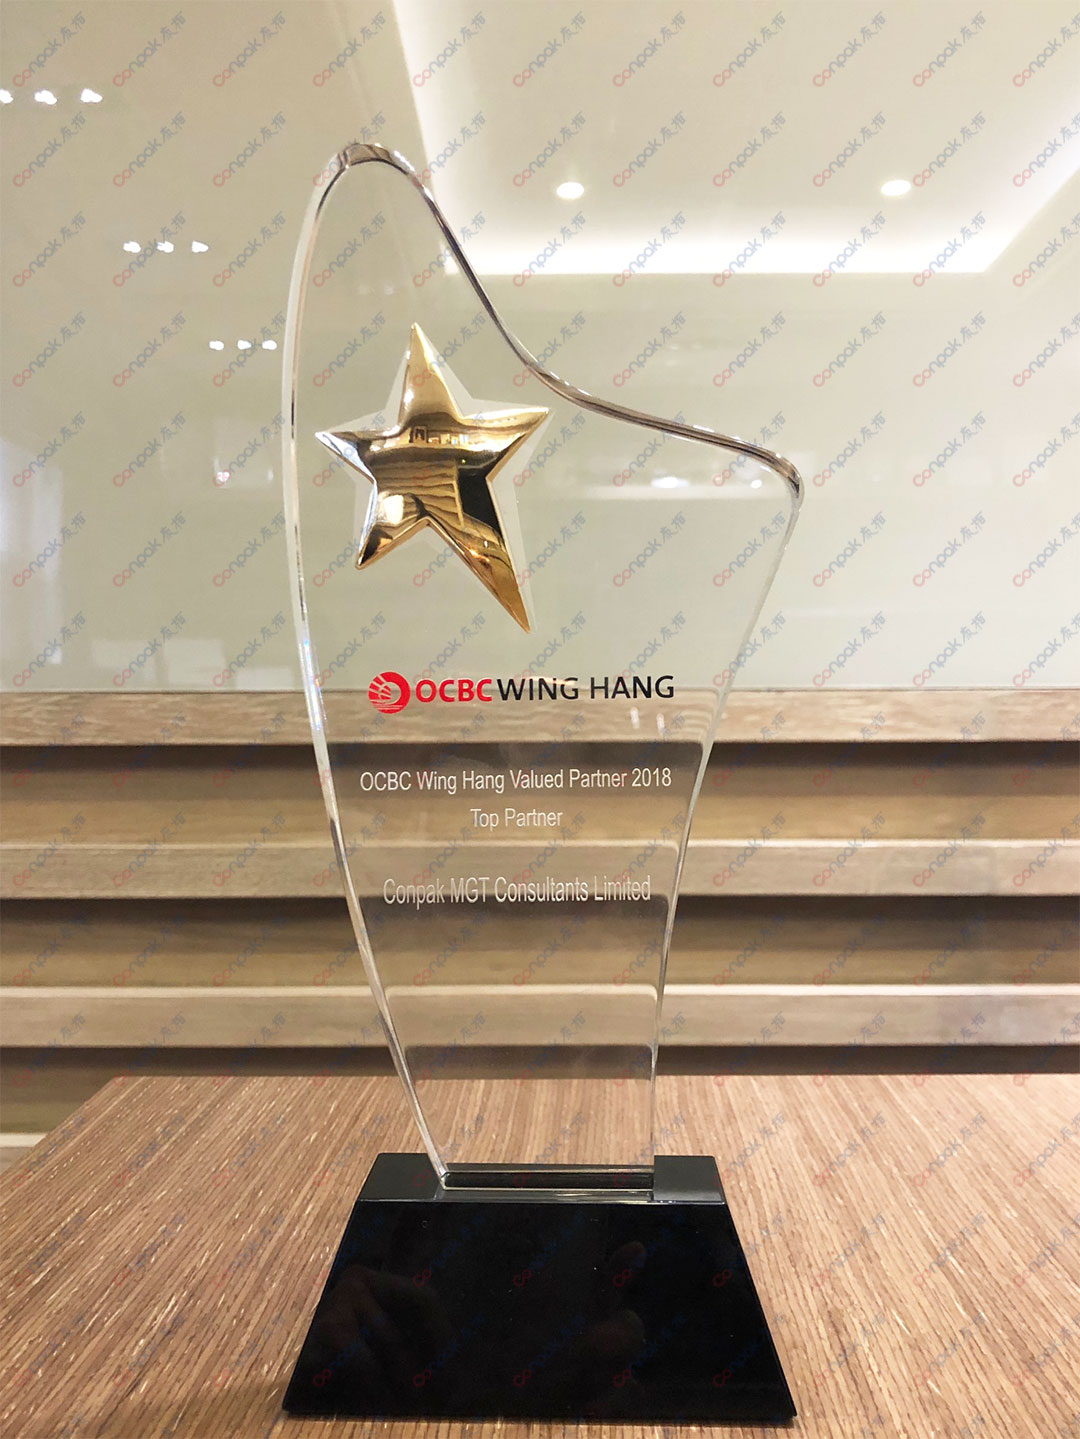 获颁“OCBC Wing Hang Valued Partner 2018 - Top Partner”奖